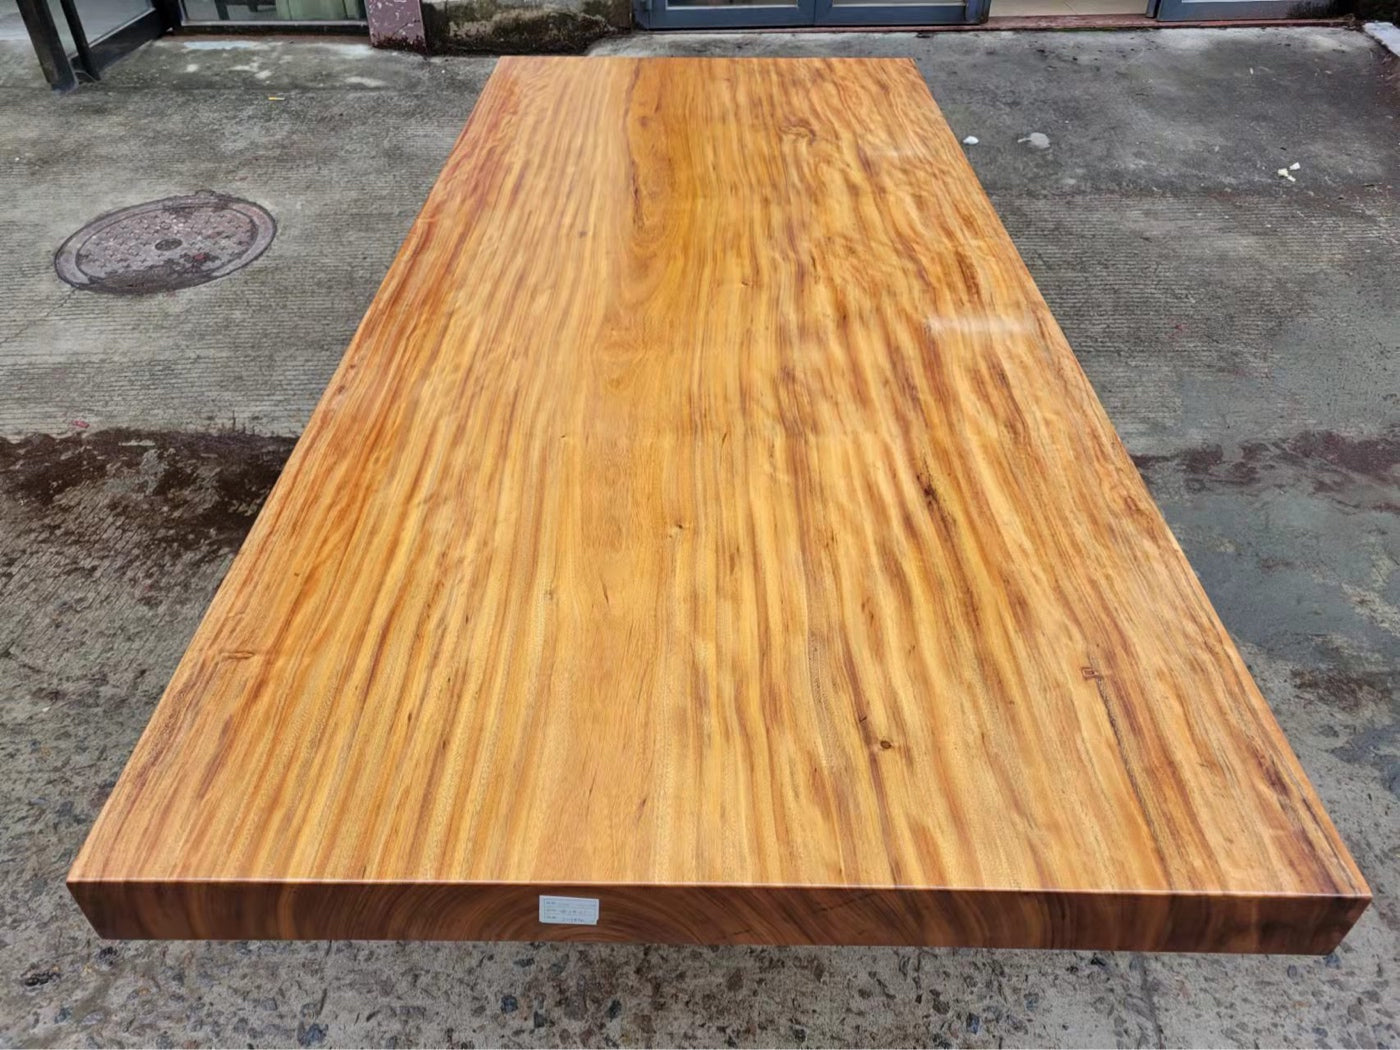 walnut slab table, live edge slab table tops, wooden slab table, slab table walnut slab table